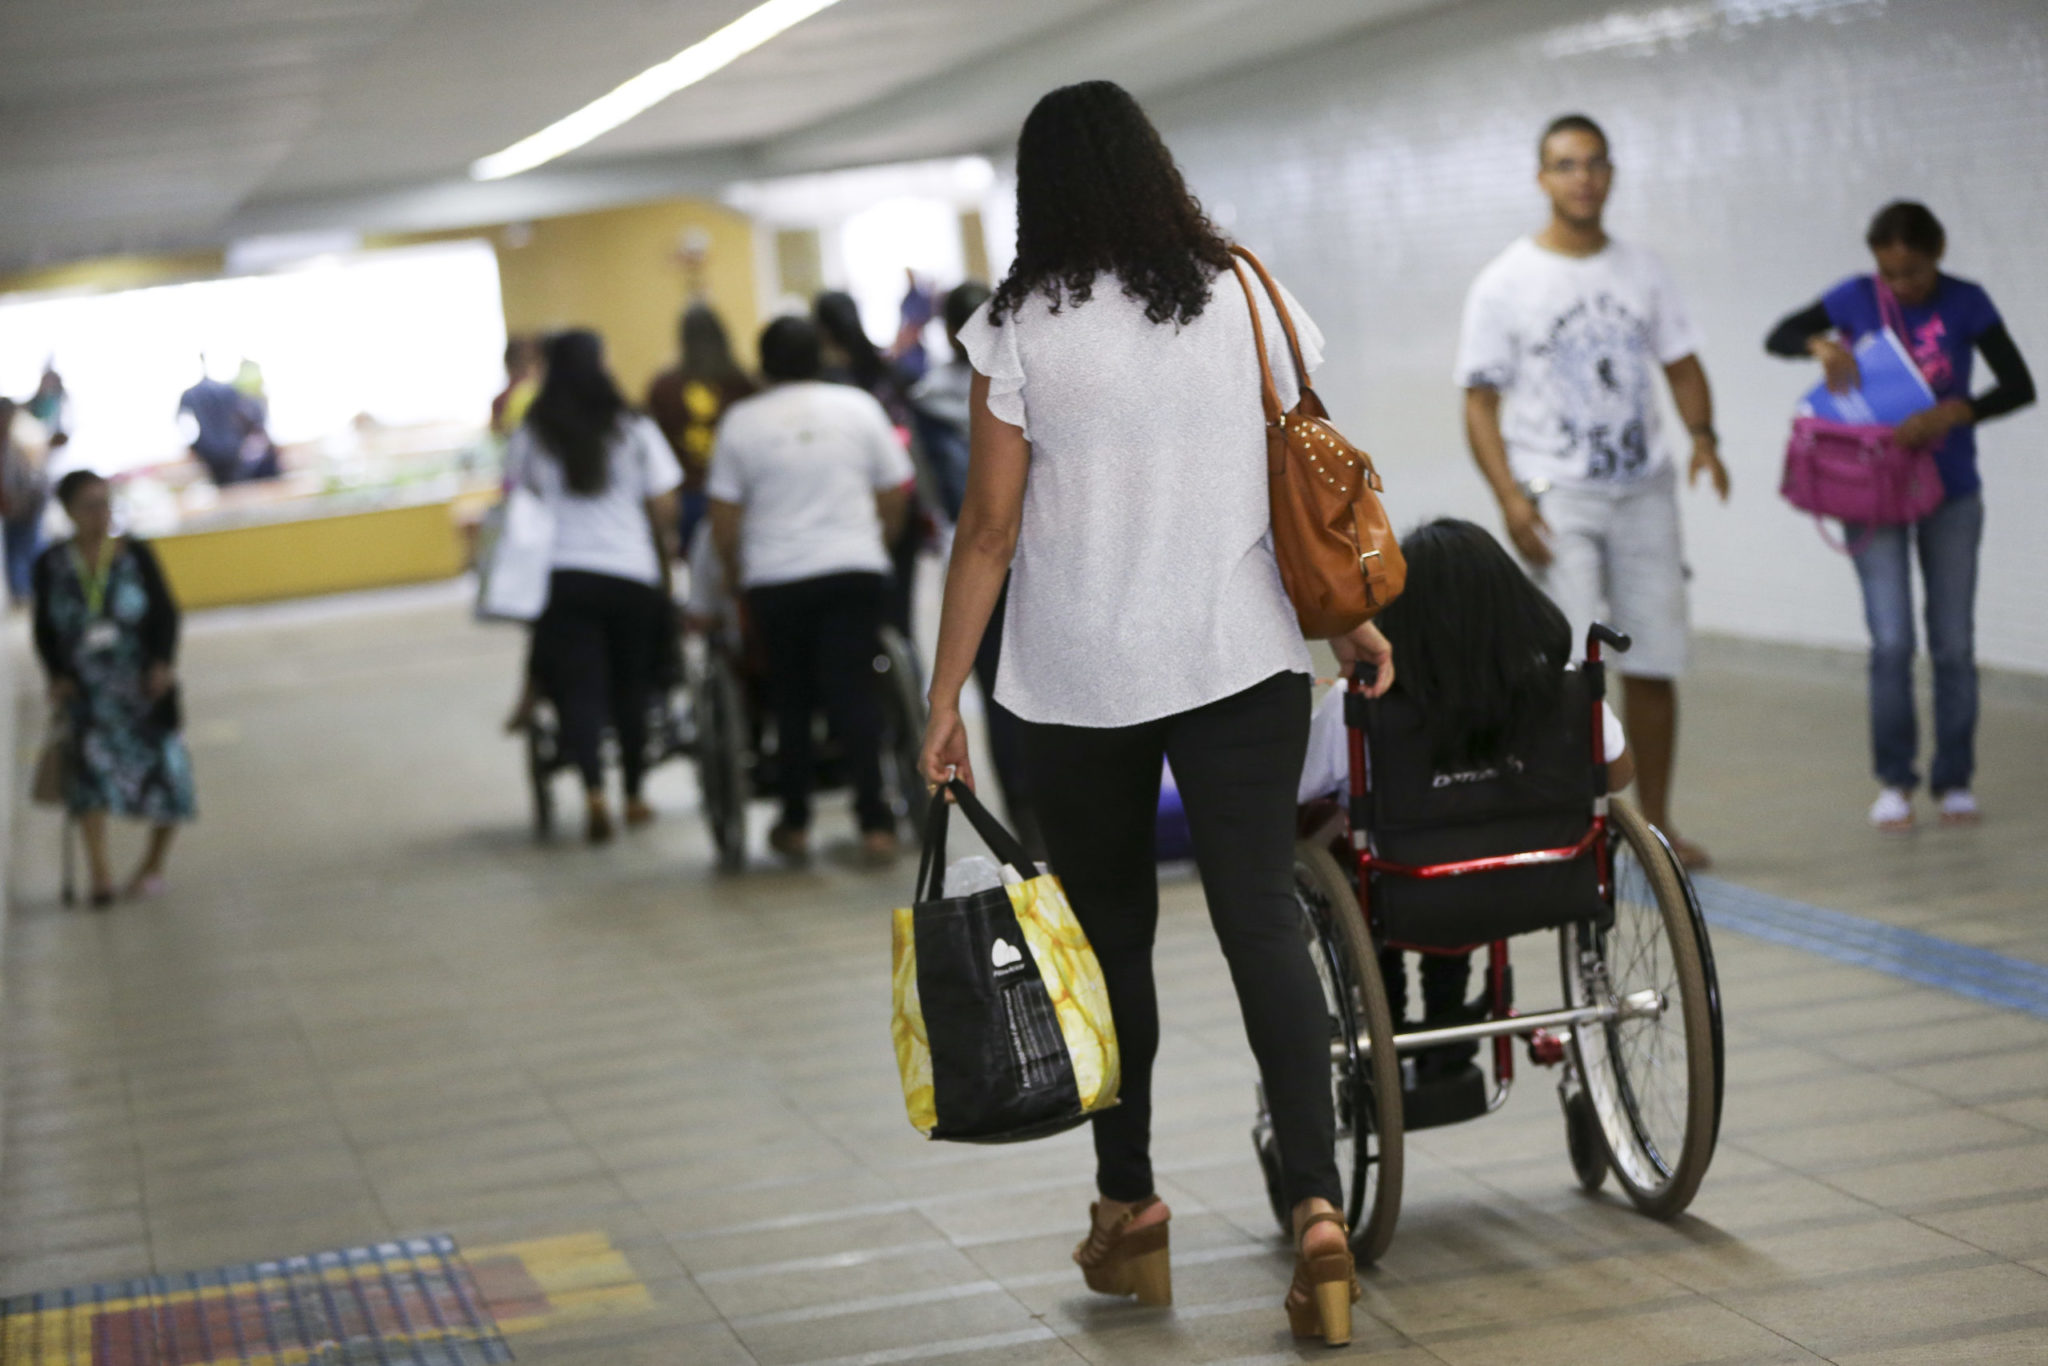 Delegacia virtual lança serviço acessível para pessoas com deficiência